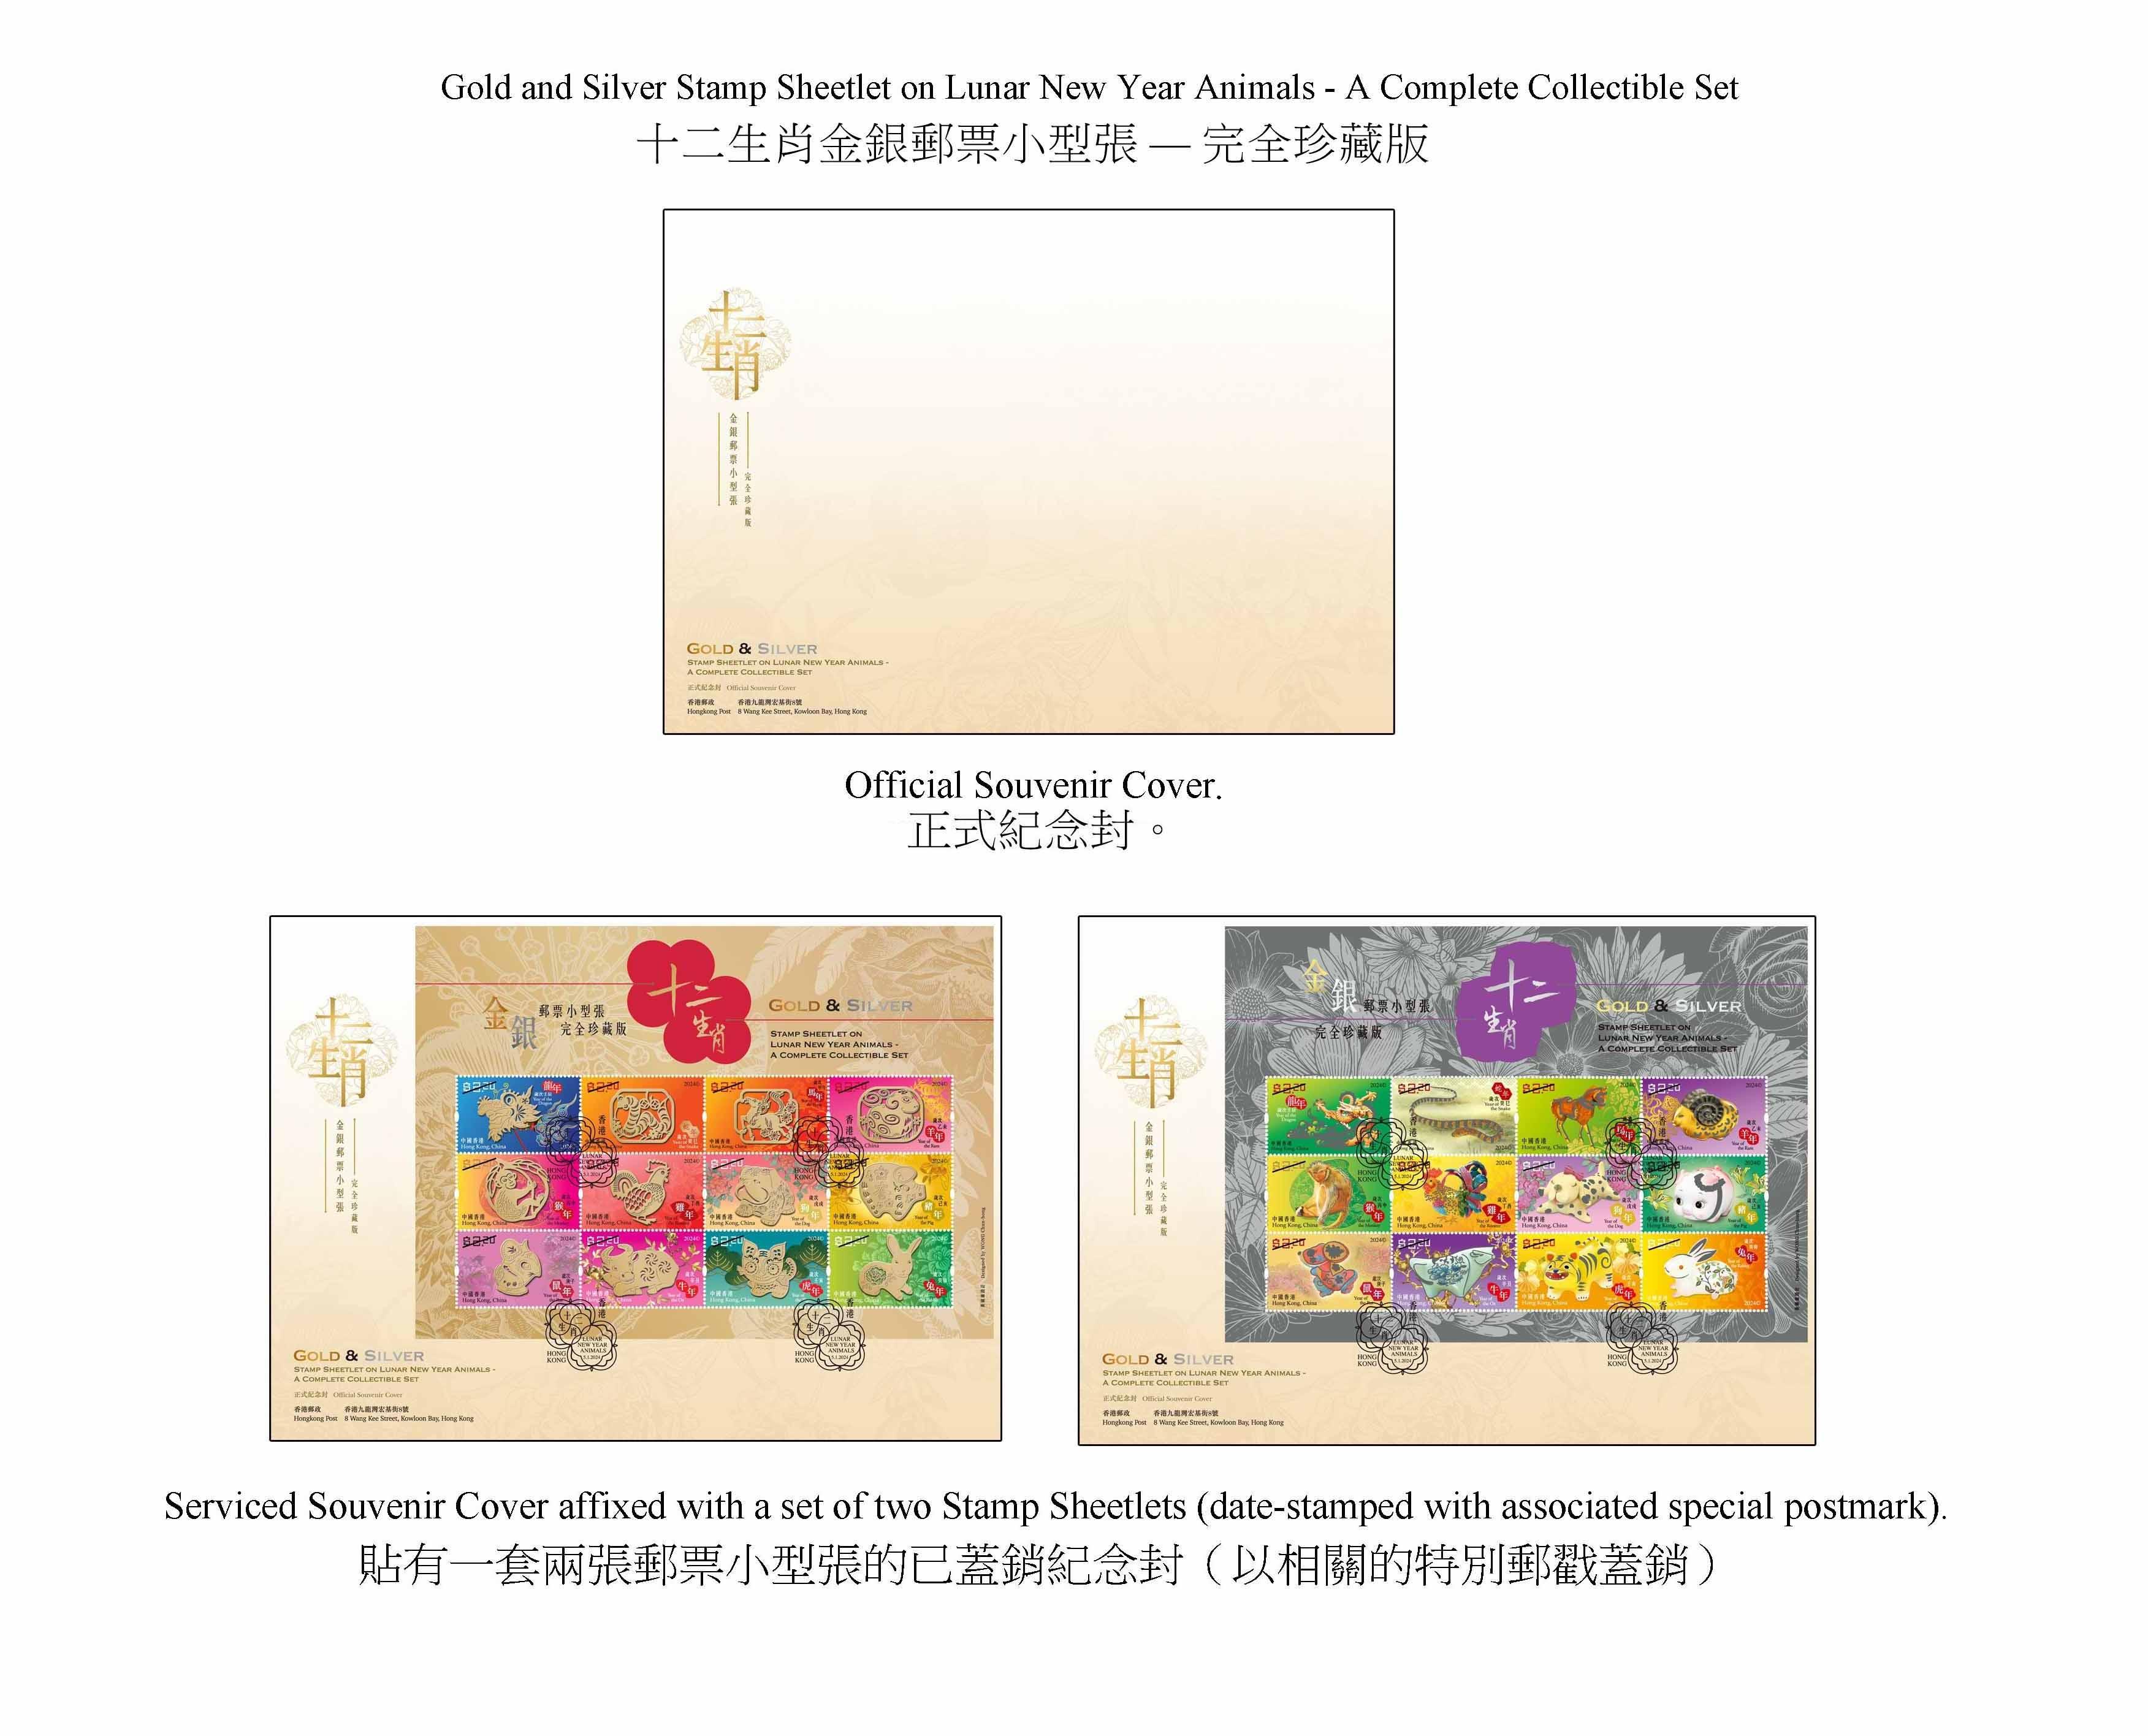 香港邮政二○二四年一月五日（星期五）发行以「岁次甲辰（龙年）」为题的特别邮票及相关集邮品，同日亦推出「十二生肖金银邮票小型张──完全珍藏版」。图示以「十二生肖金银邮票小型张──完全珍藏版」为题的纪念封。